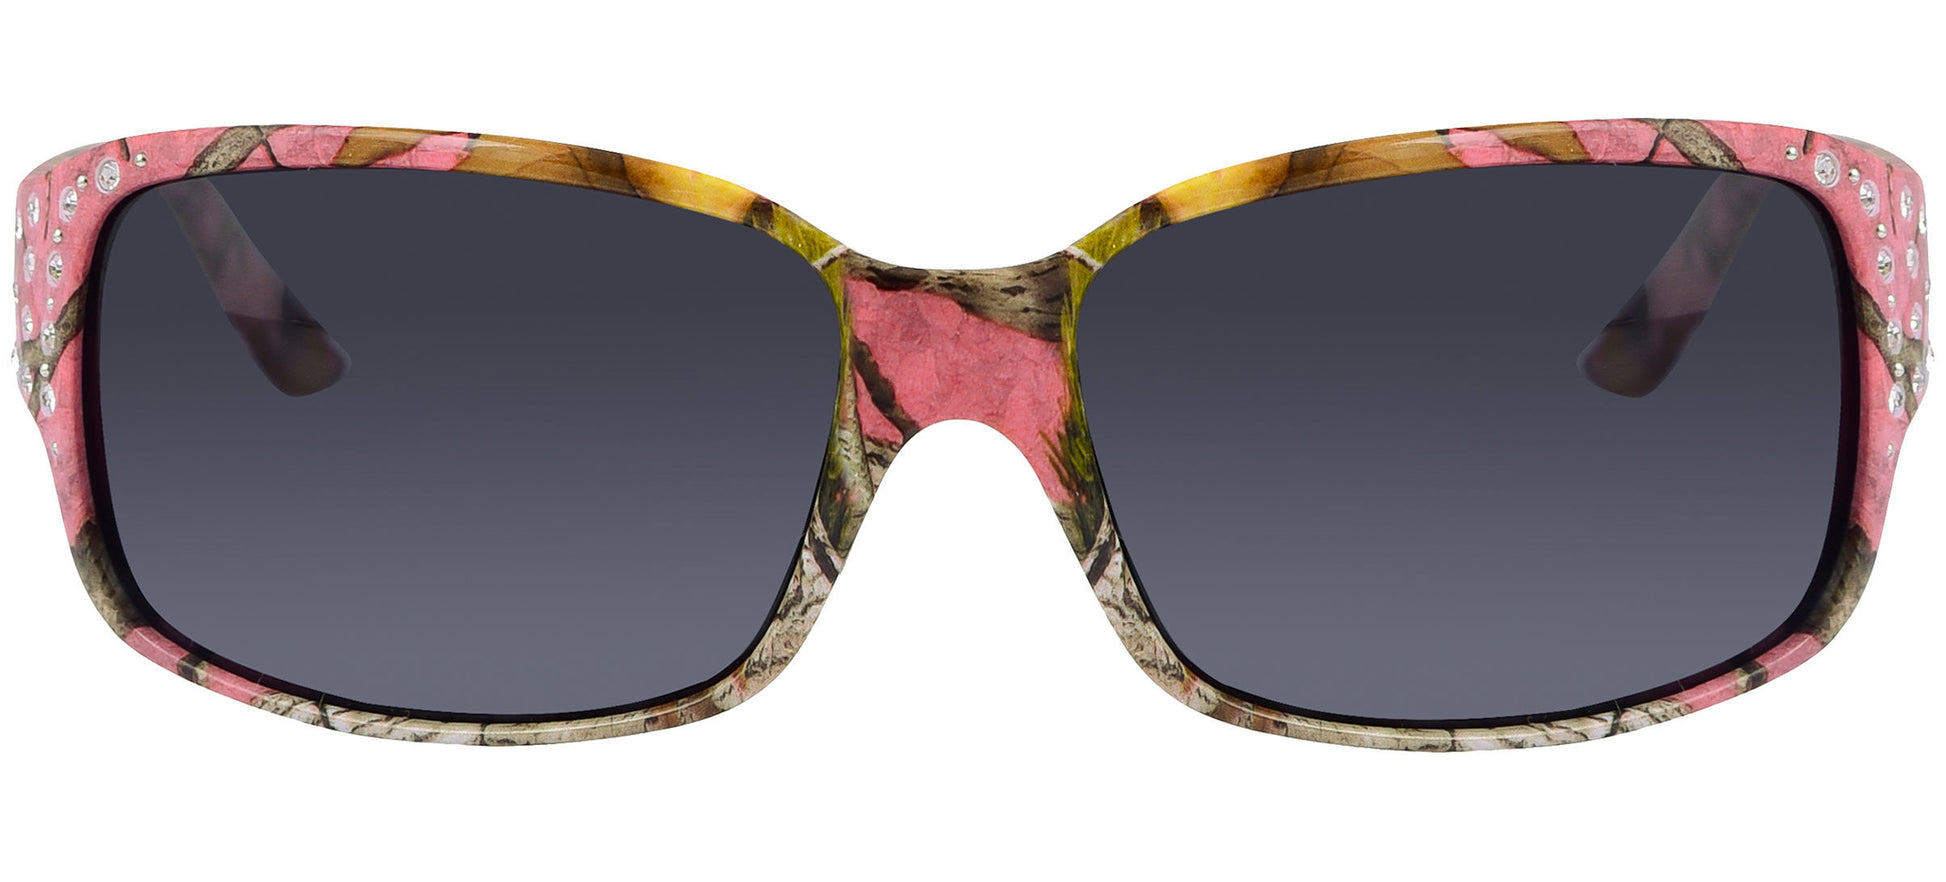 Third image: Polarized Pink Camo Sunglasses for Women - Diamante - Pink Camo Frame - Smoke Lens